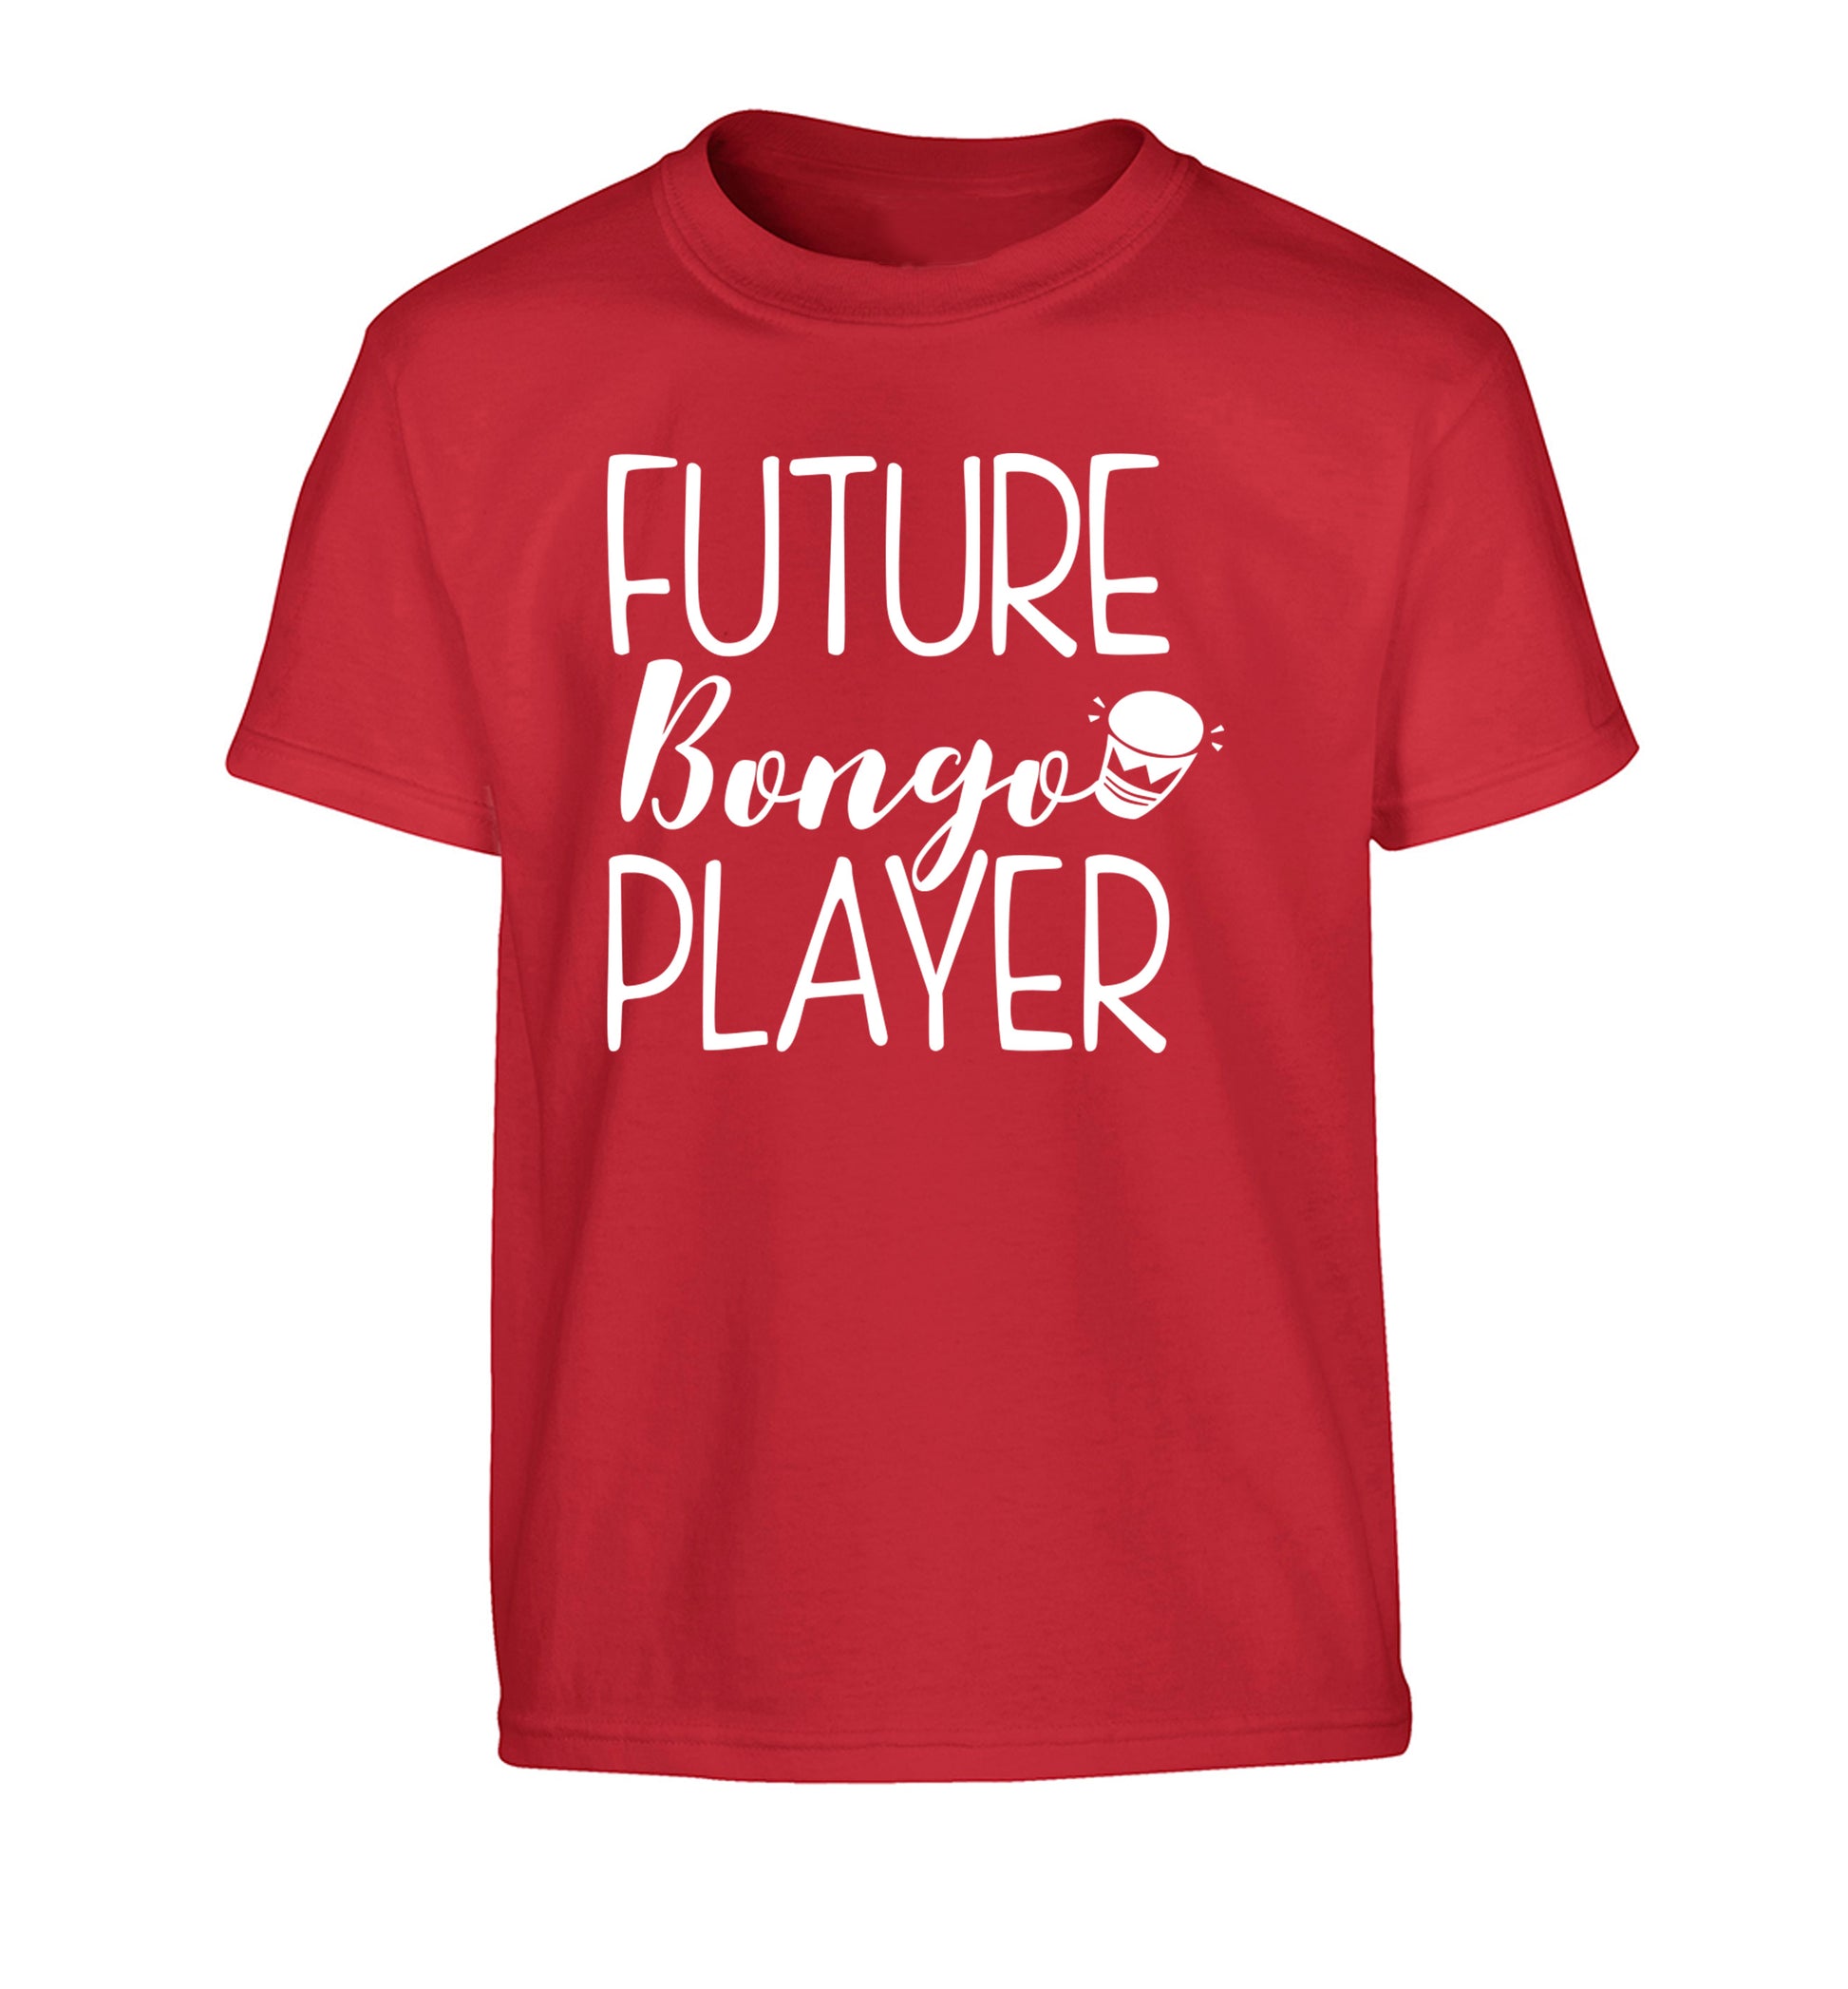 Future bongo player Children's red Tshirt 12-14 Years